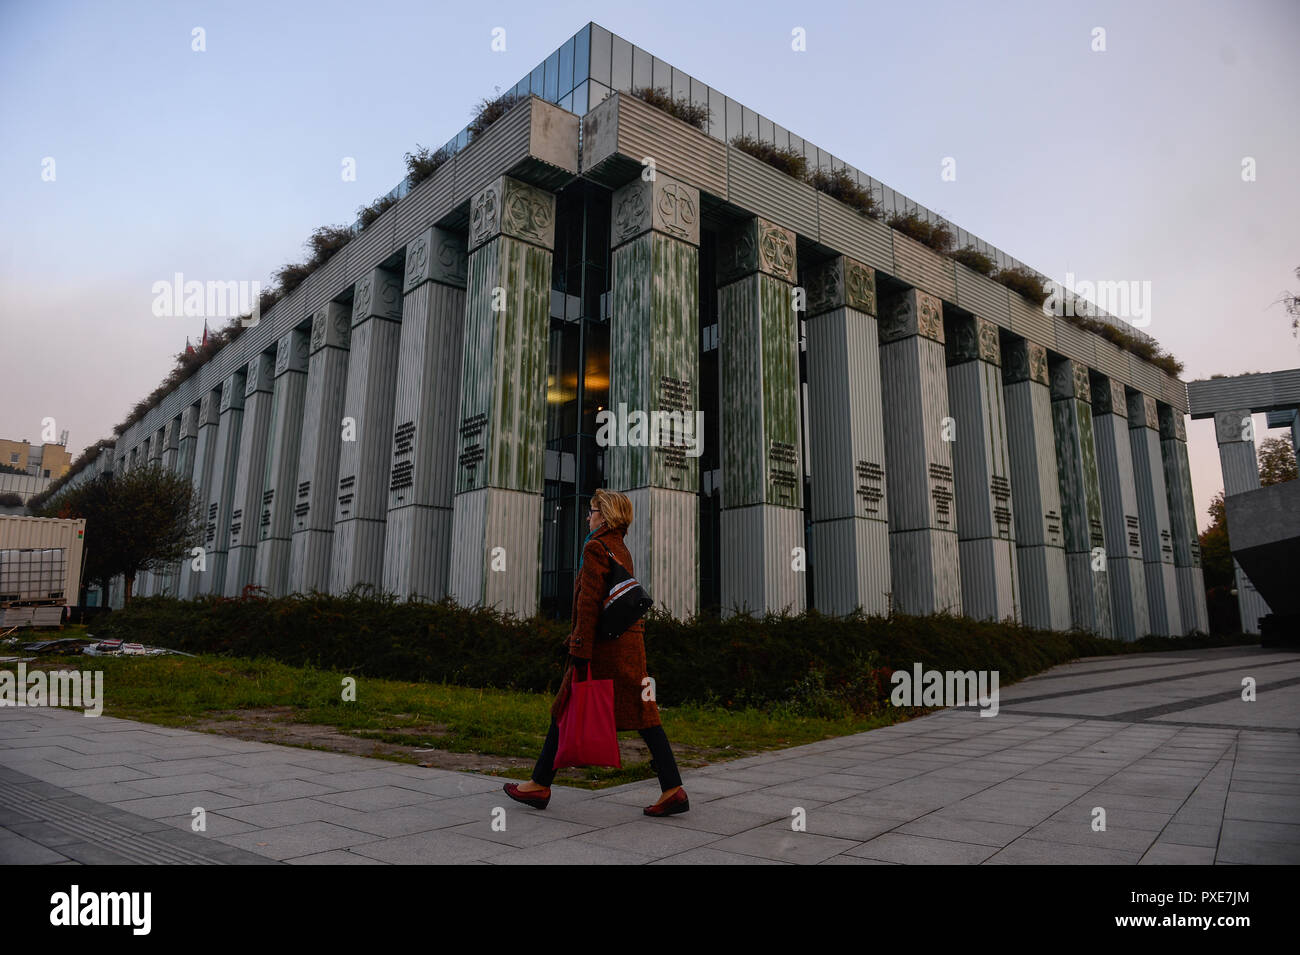 Una mujer camina por la Corte Suprema de Polonia. El 19 de octubre de 2018, el Tribunal Europeo de Justicia ordenó gobierno polaco para revertir una ley que elimina casi un tercio de los magistrados de la Corte Suprema, y a reintegrar a aquellos que fueron despedidos. Foto de stock